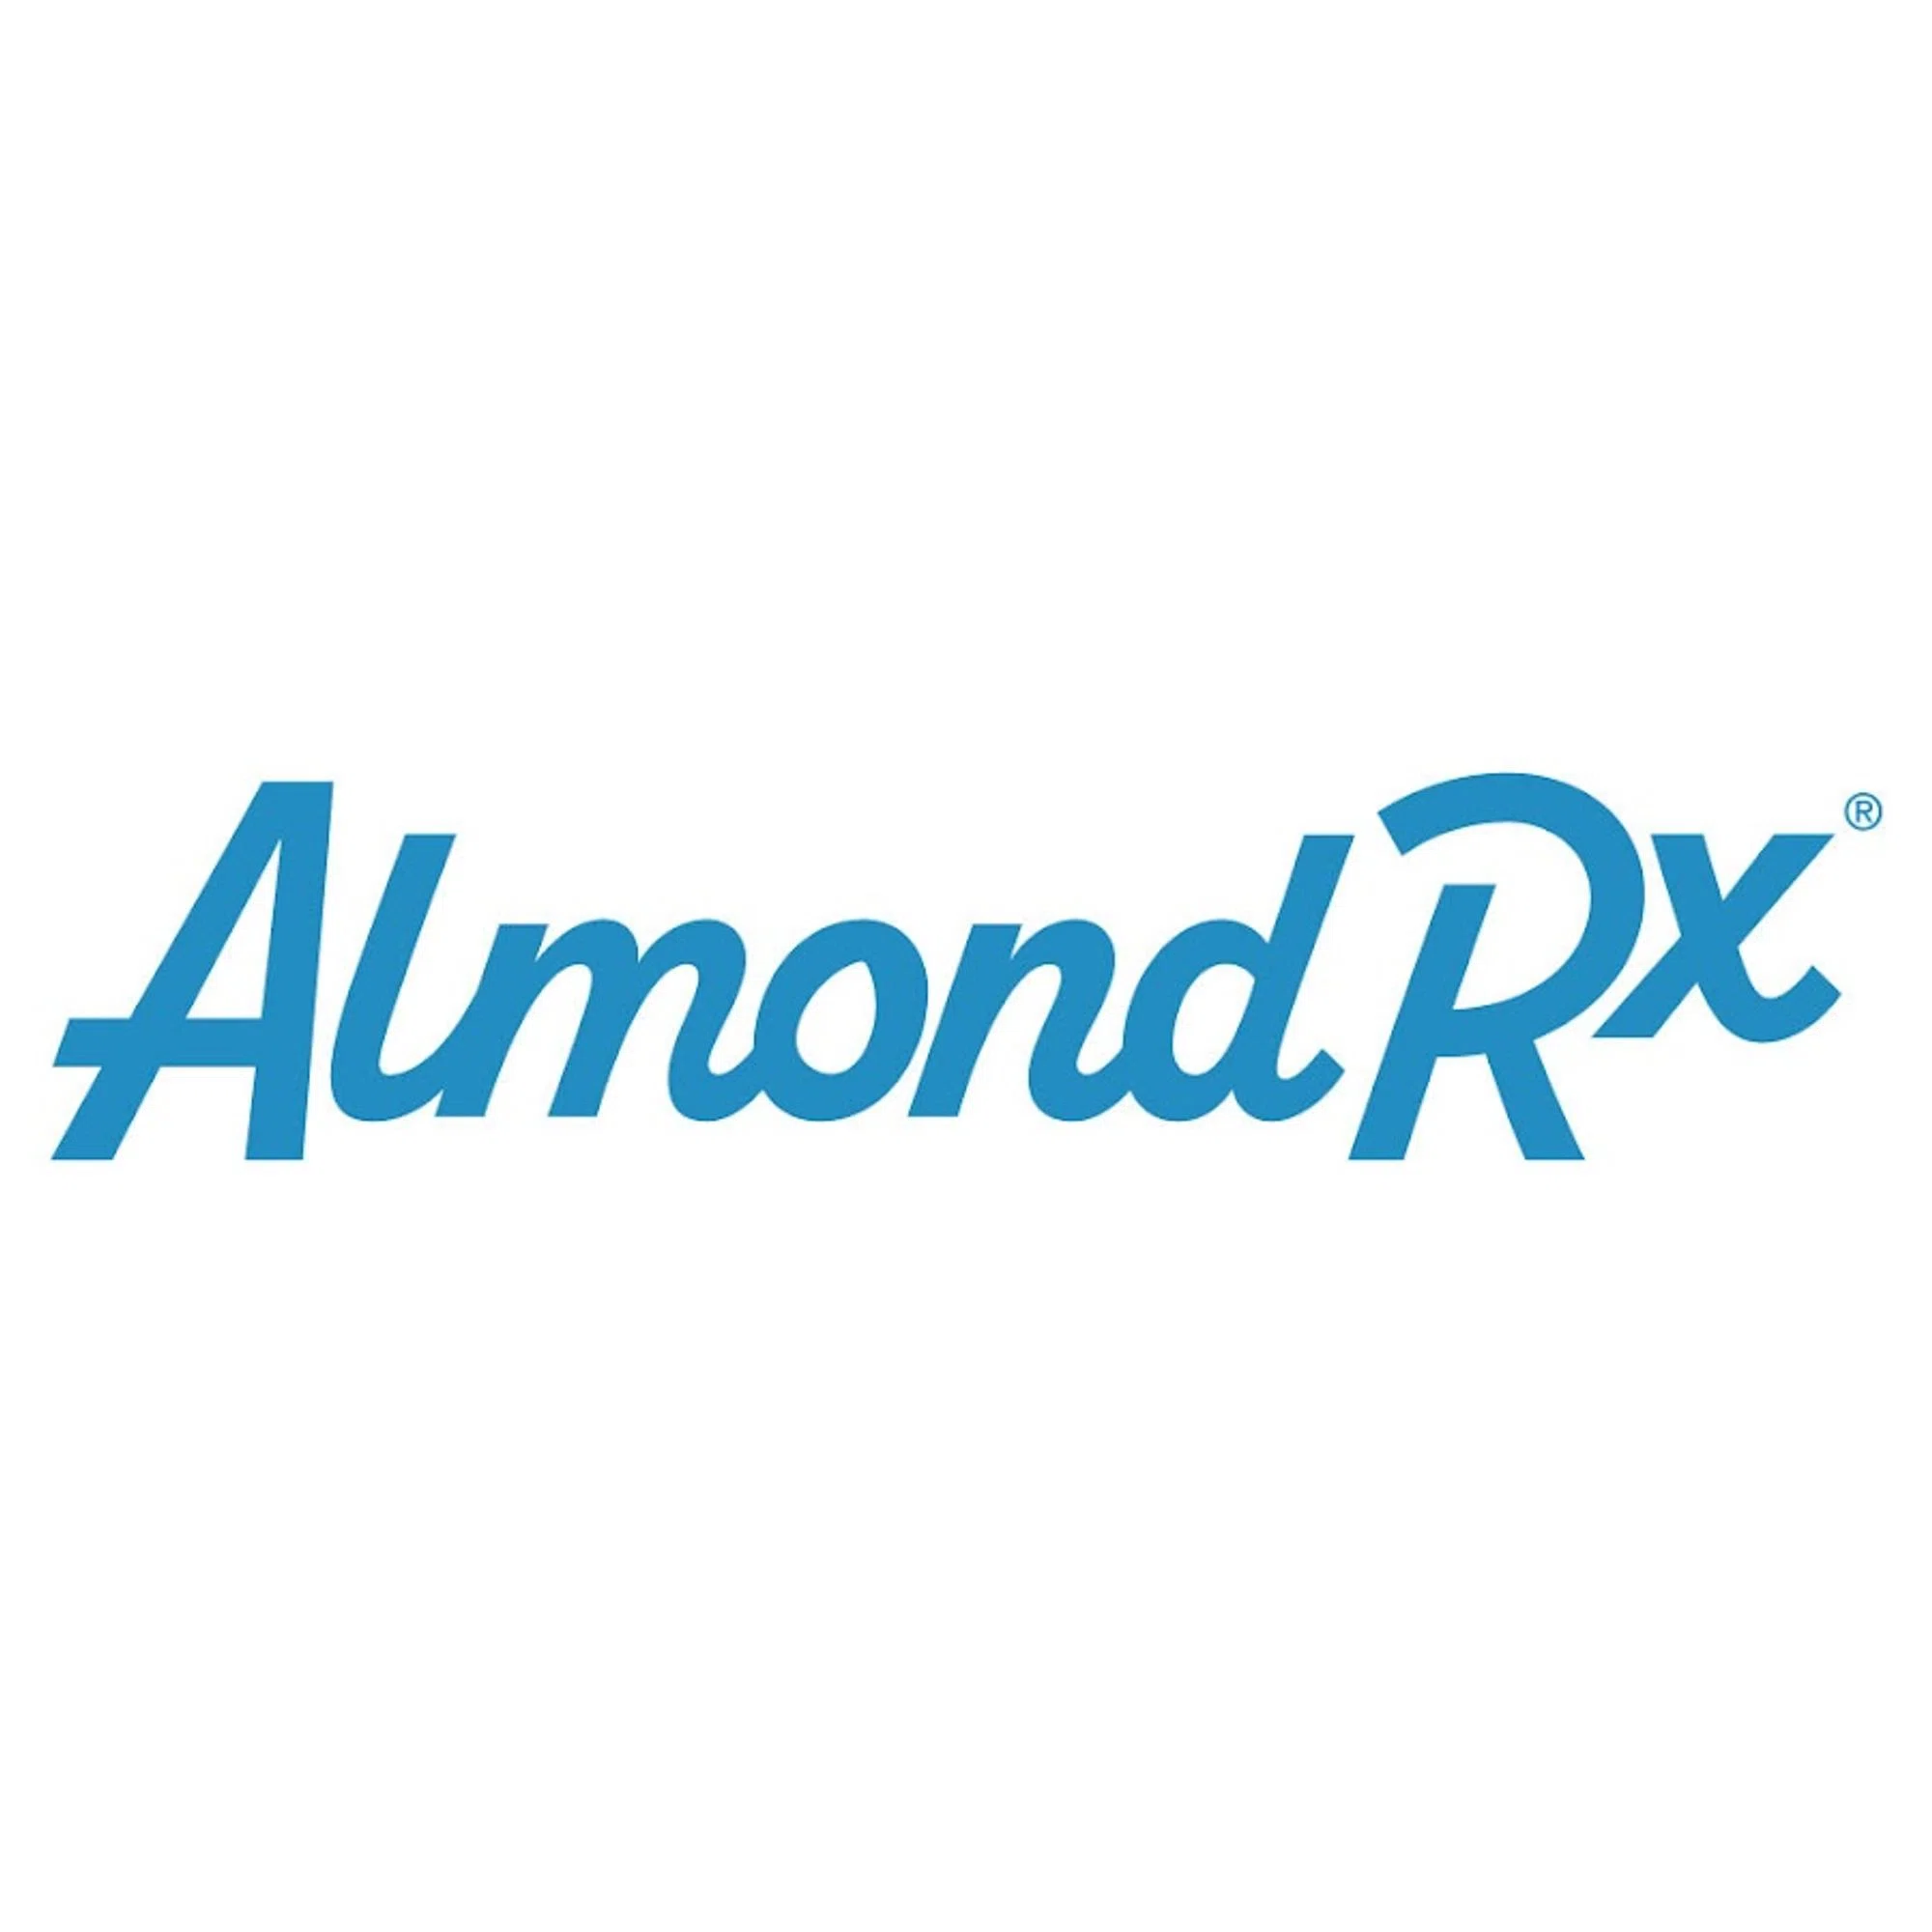 almondrx.com logo